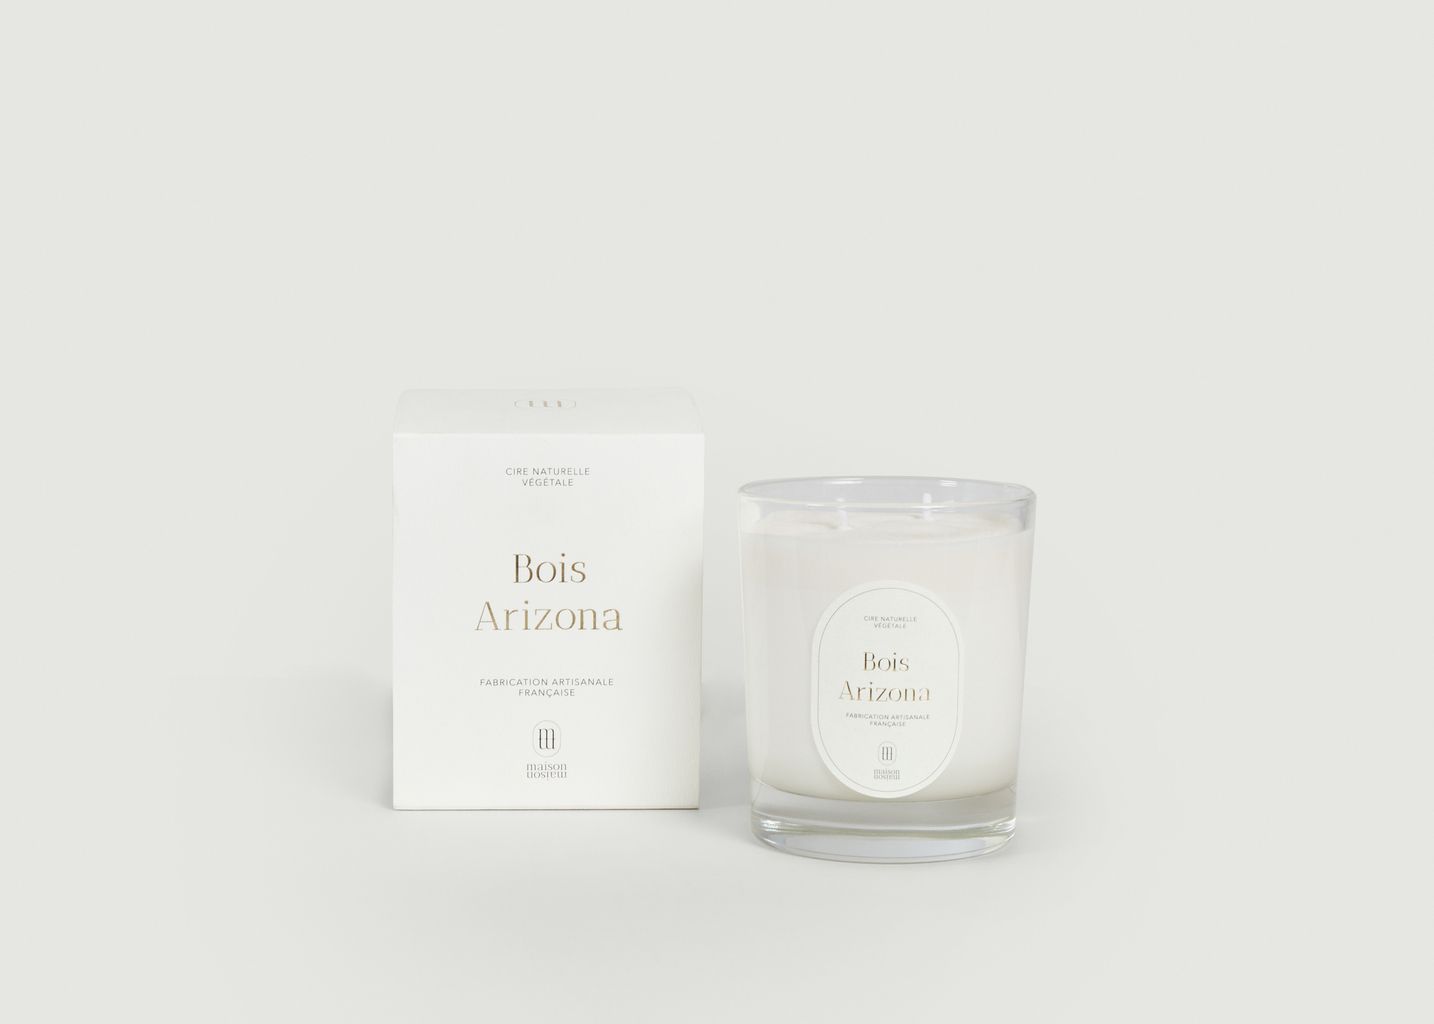 Arizona Wood scented candle 220g - Maison Maison Paris